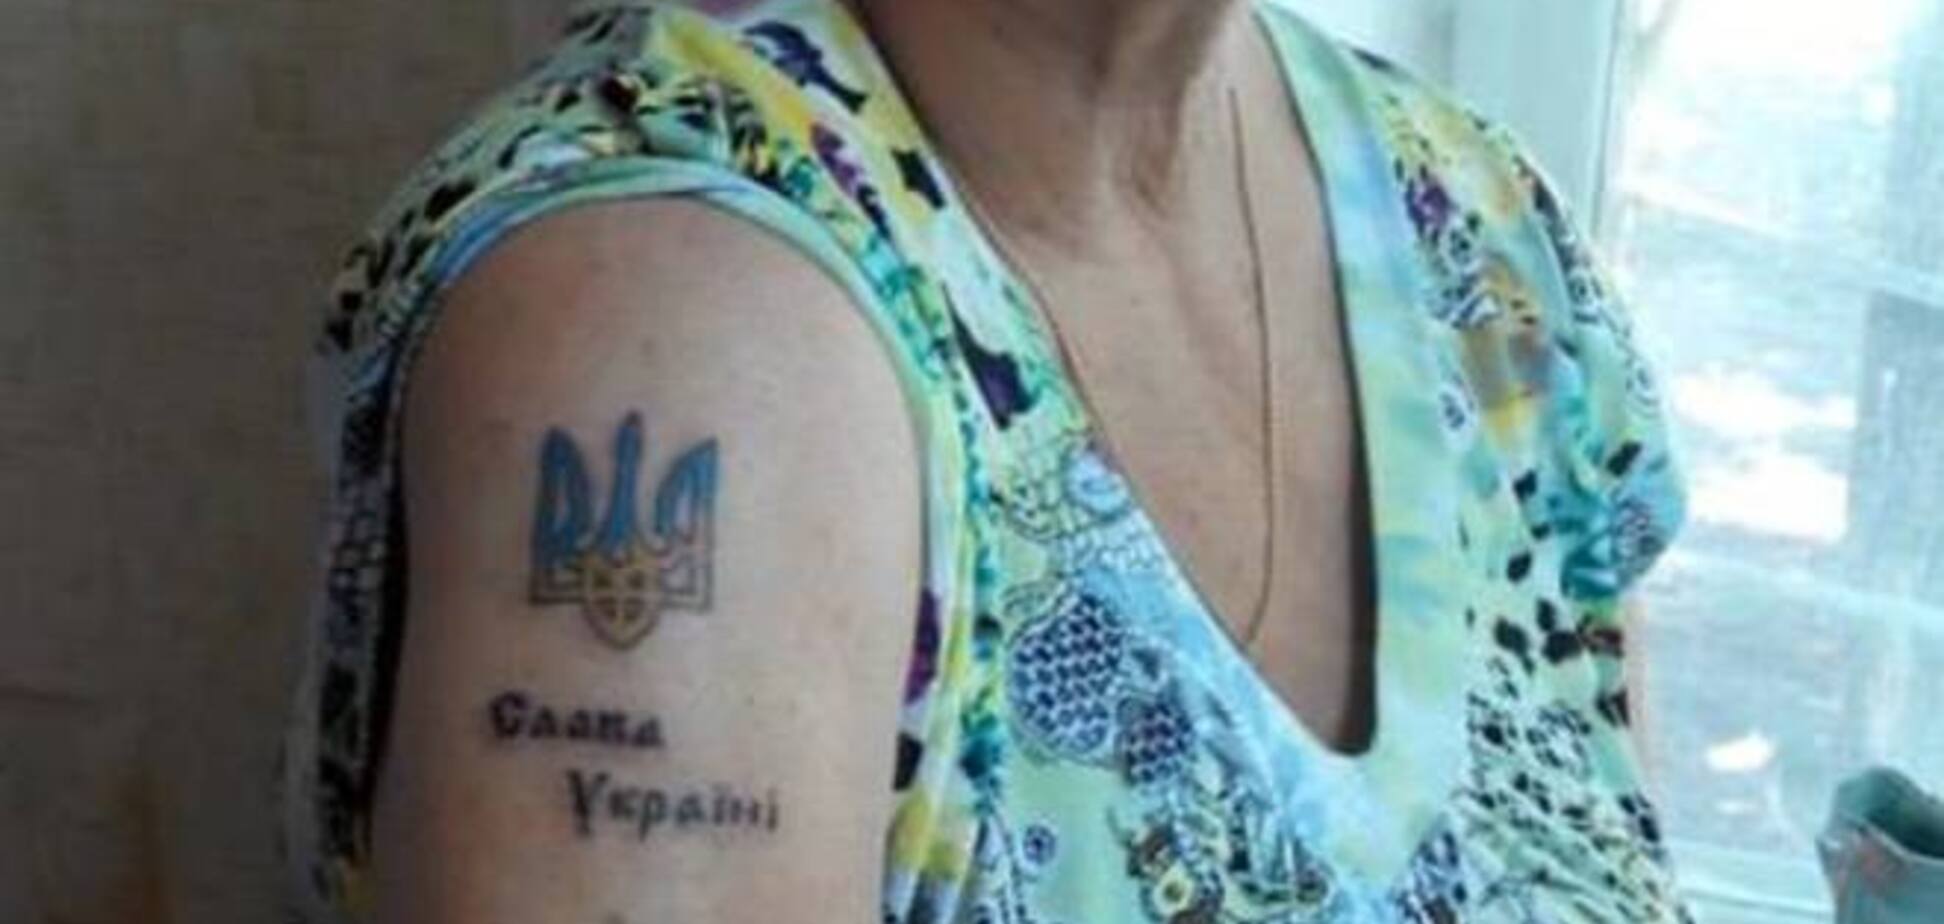 74-летняя пенсионерка из Запорожья набила тату 'Слава Украине' и отправилась на отдых в Крым